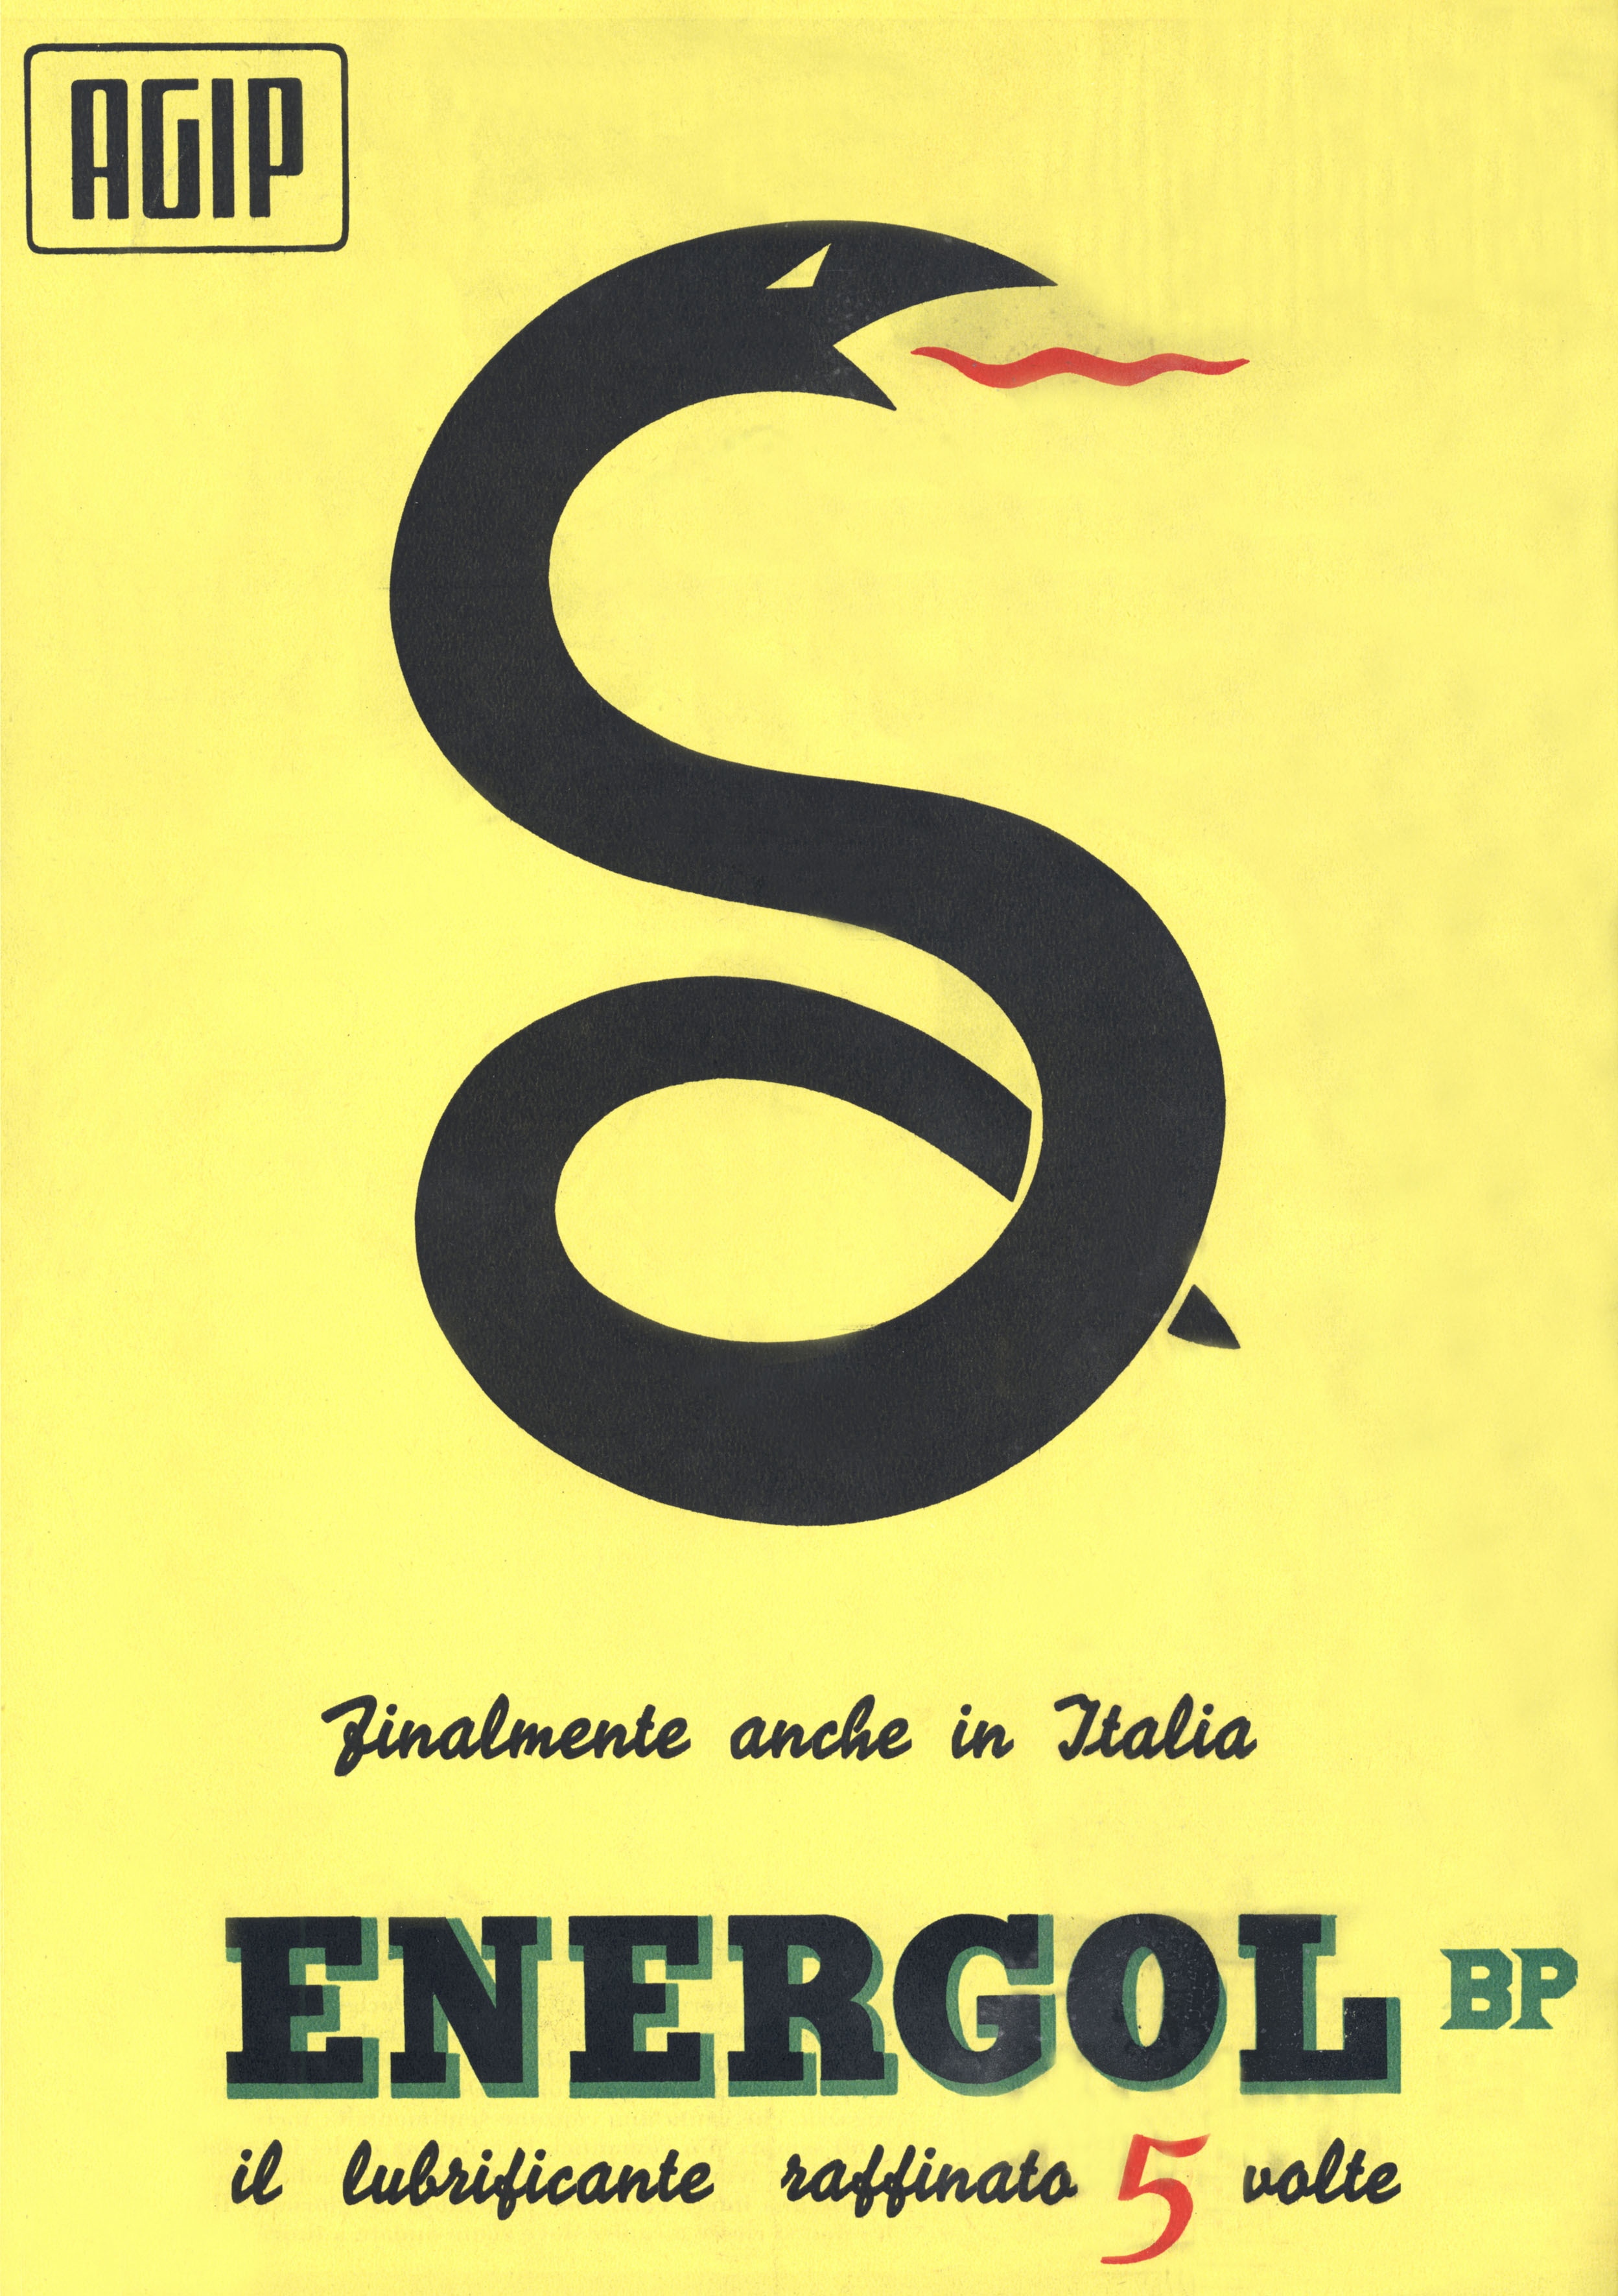 Manifesto pubblicitario dell’Agip, 1958